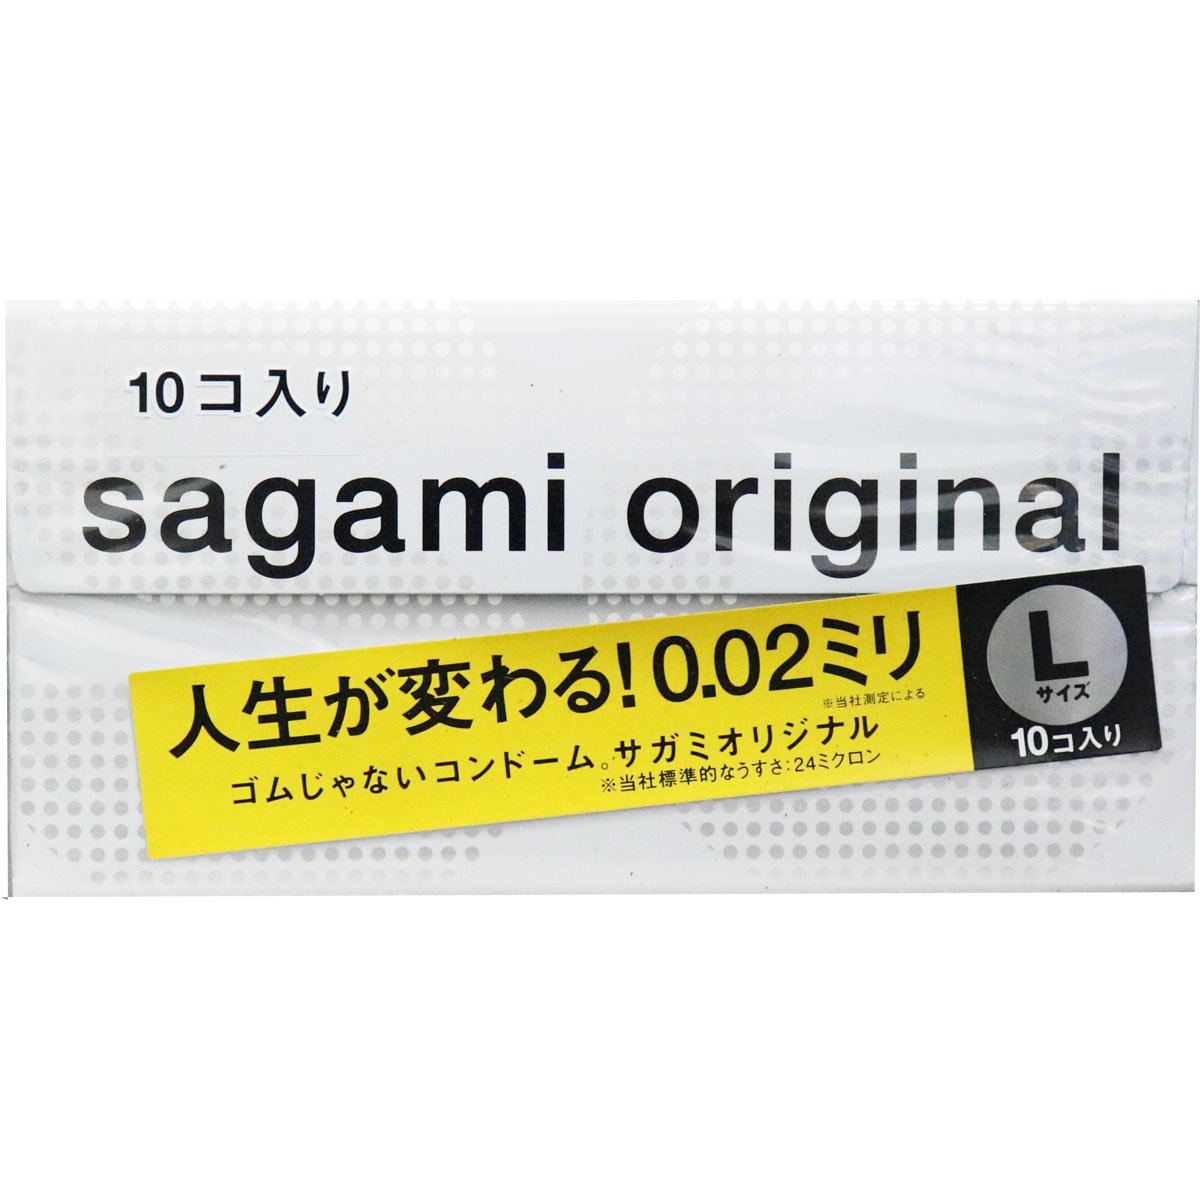 Sagami Original 0.02 Condom Large 10 pcs . Free Shipping from Japan -  AllFromJapan